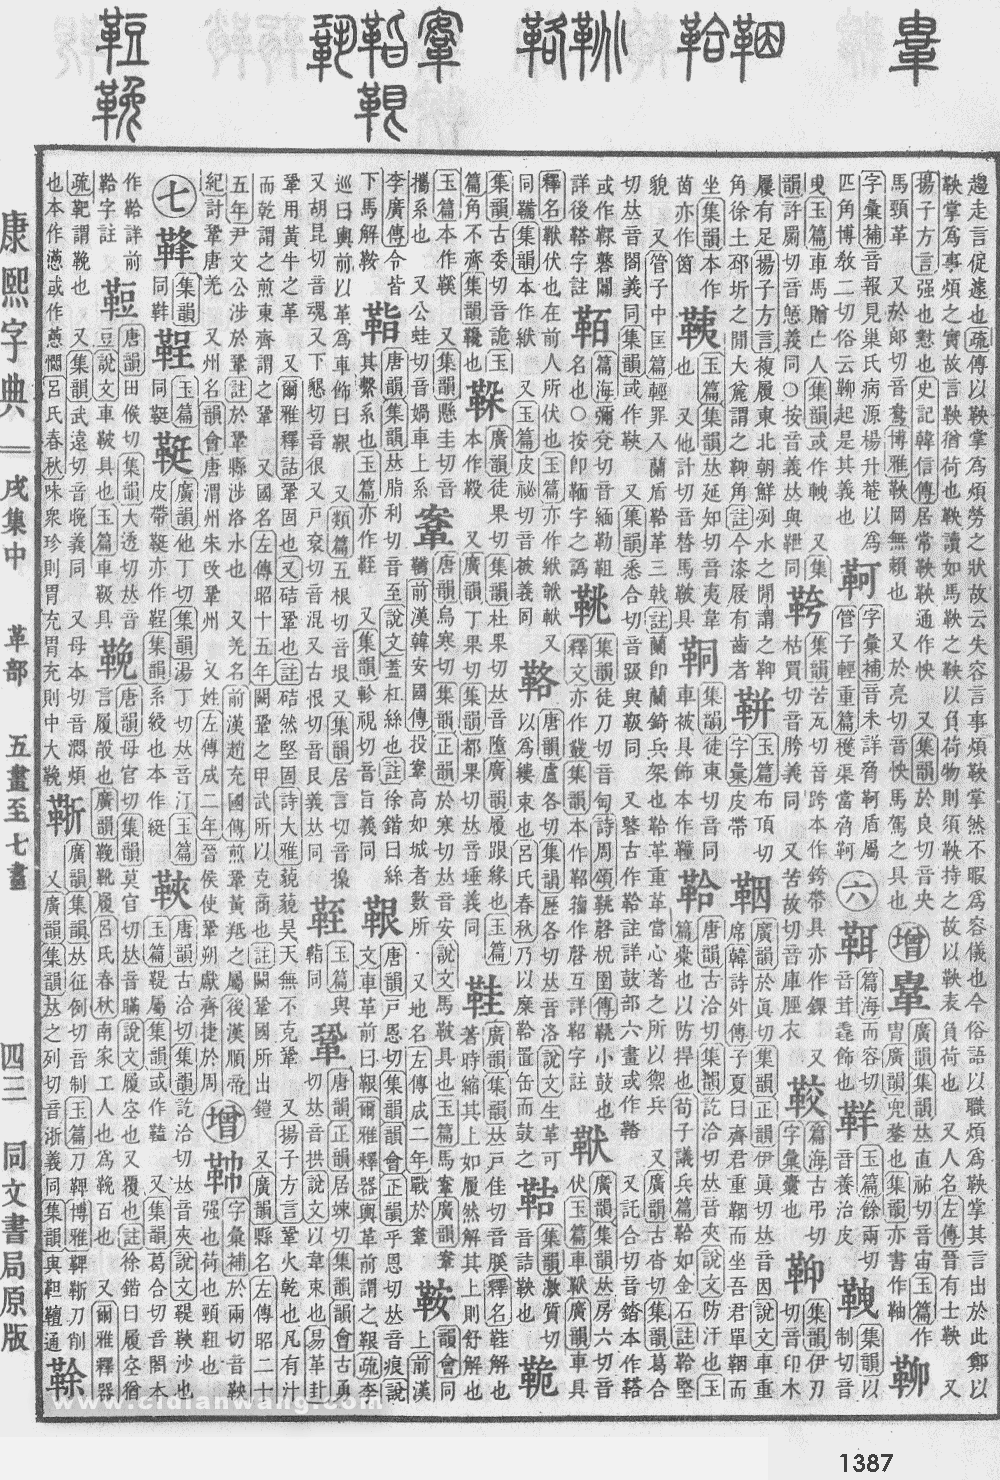 康熙字典掃描版第1387頁